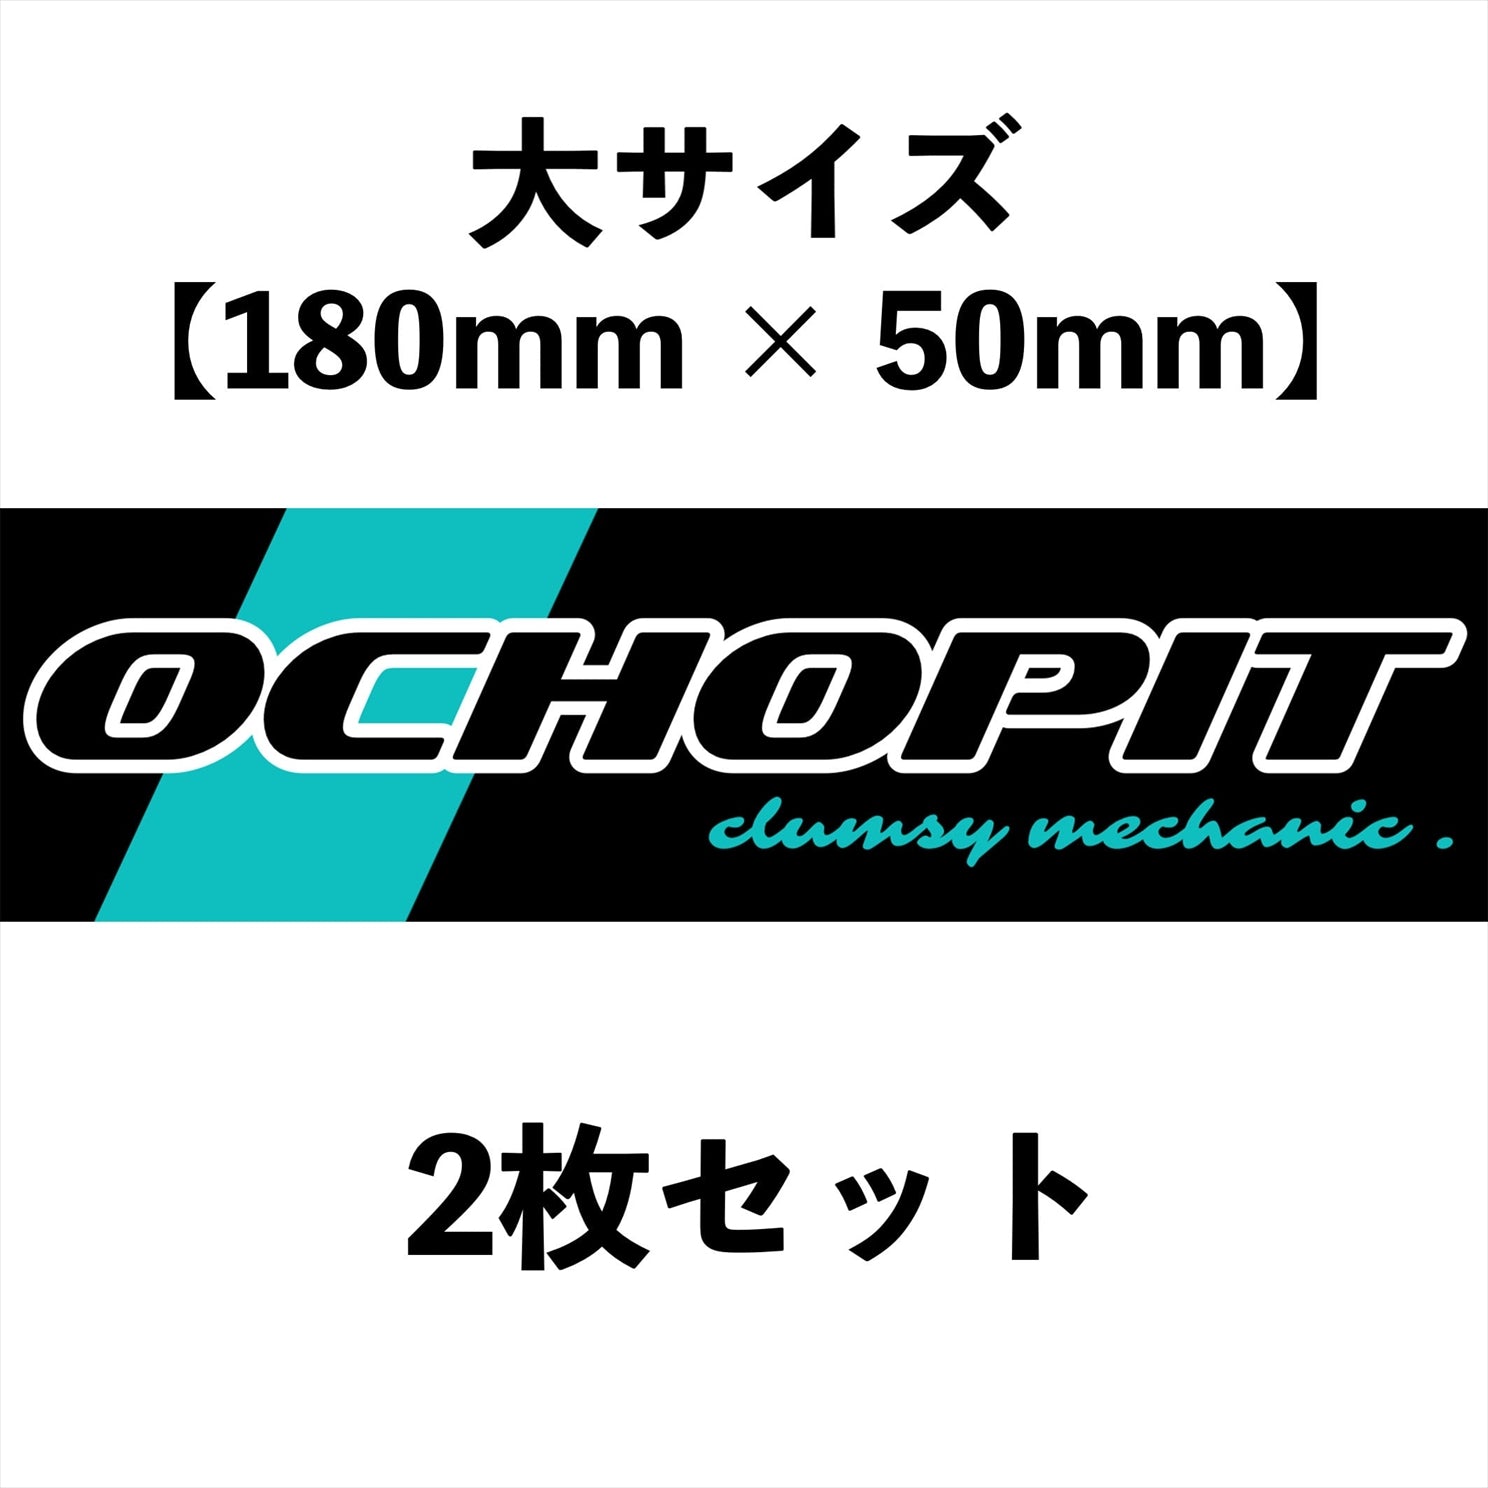 OchoPITステッカー・大サイズ（2枚セット）